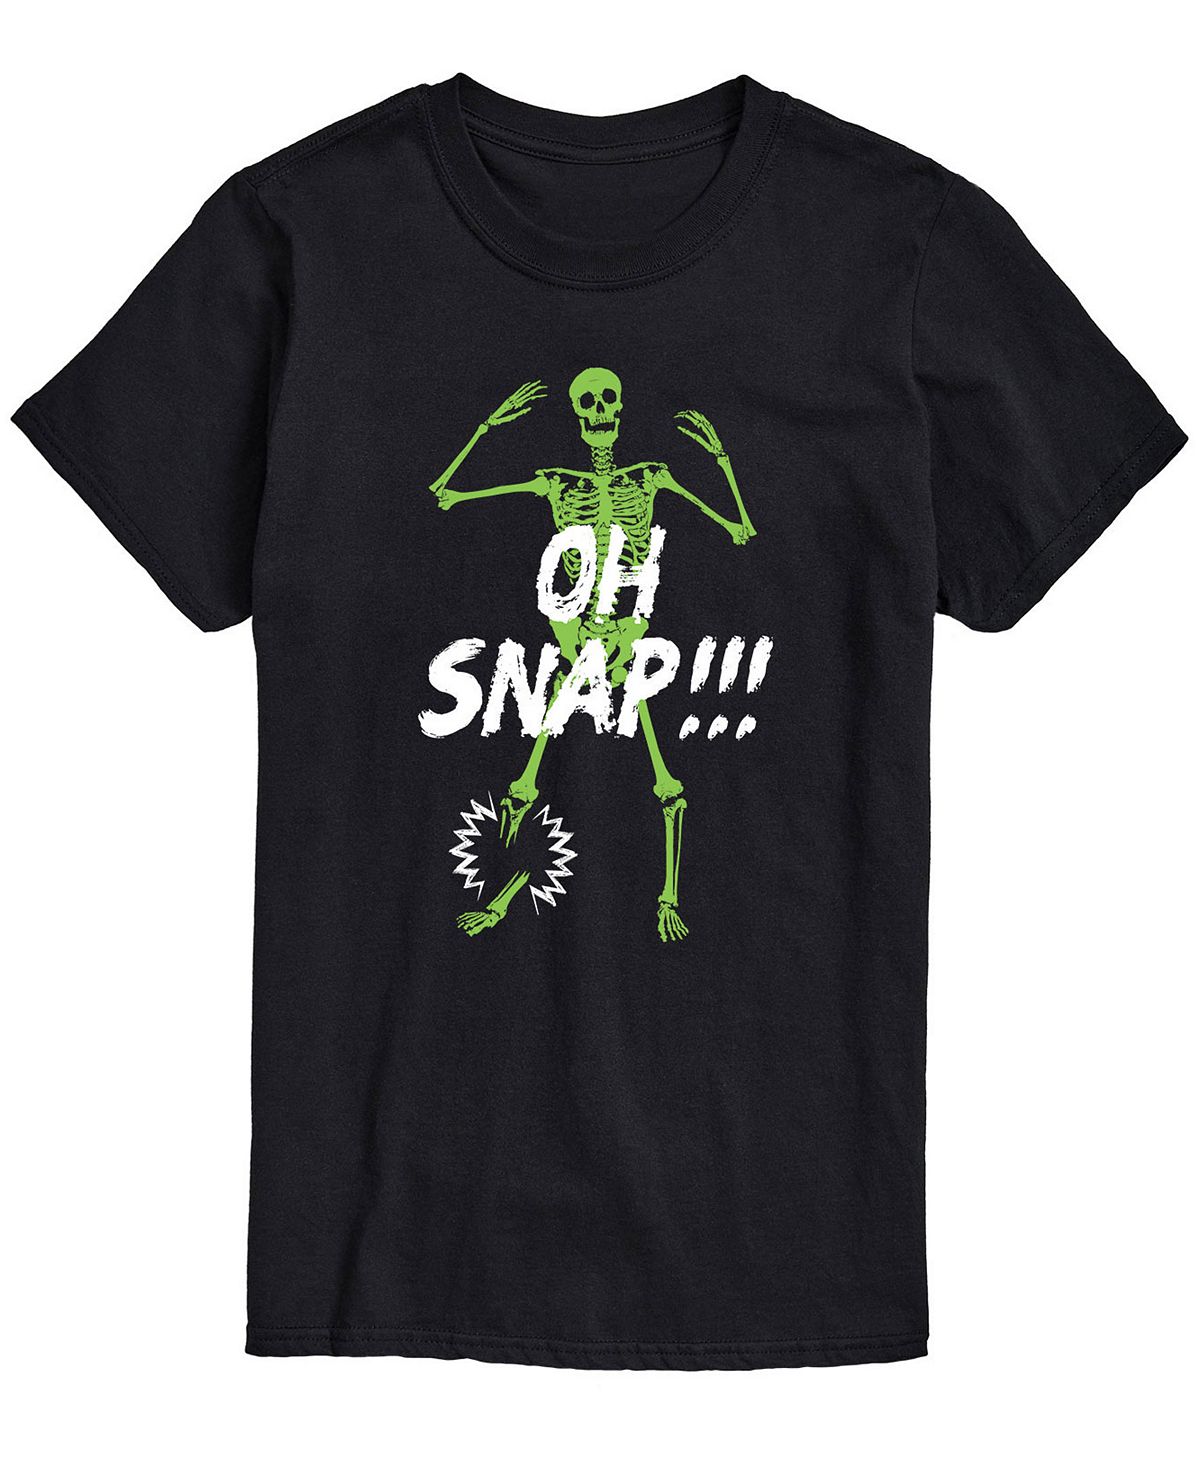 цена Мужская футболка классического кроя oh snap AIRWAVES, черный